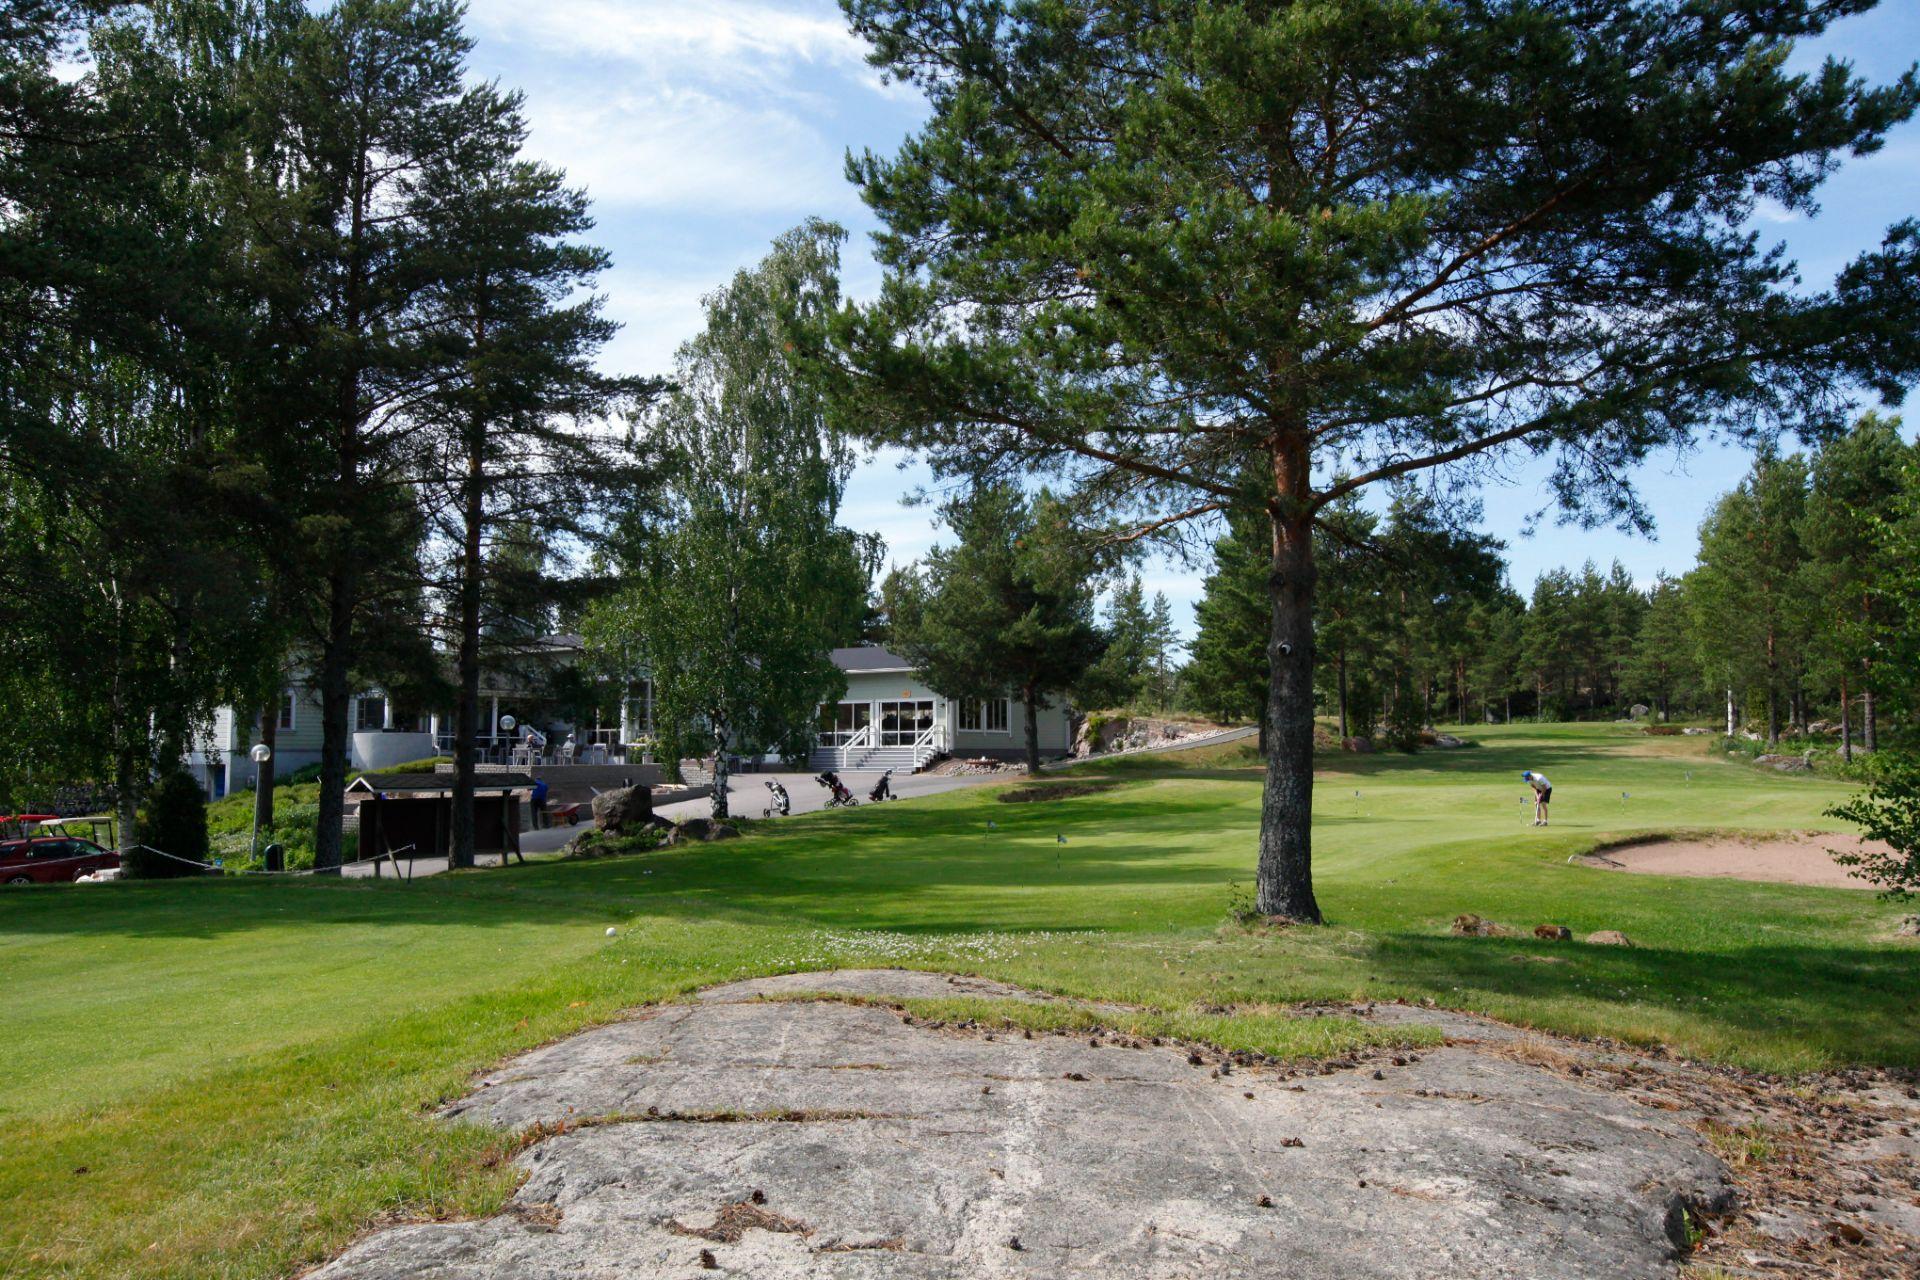 Sea Golf Rönnäs 4. kuva – Golfpiste Kenttäopas – Suomi